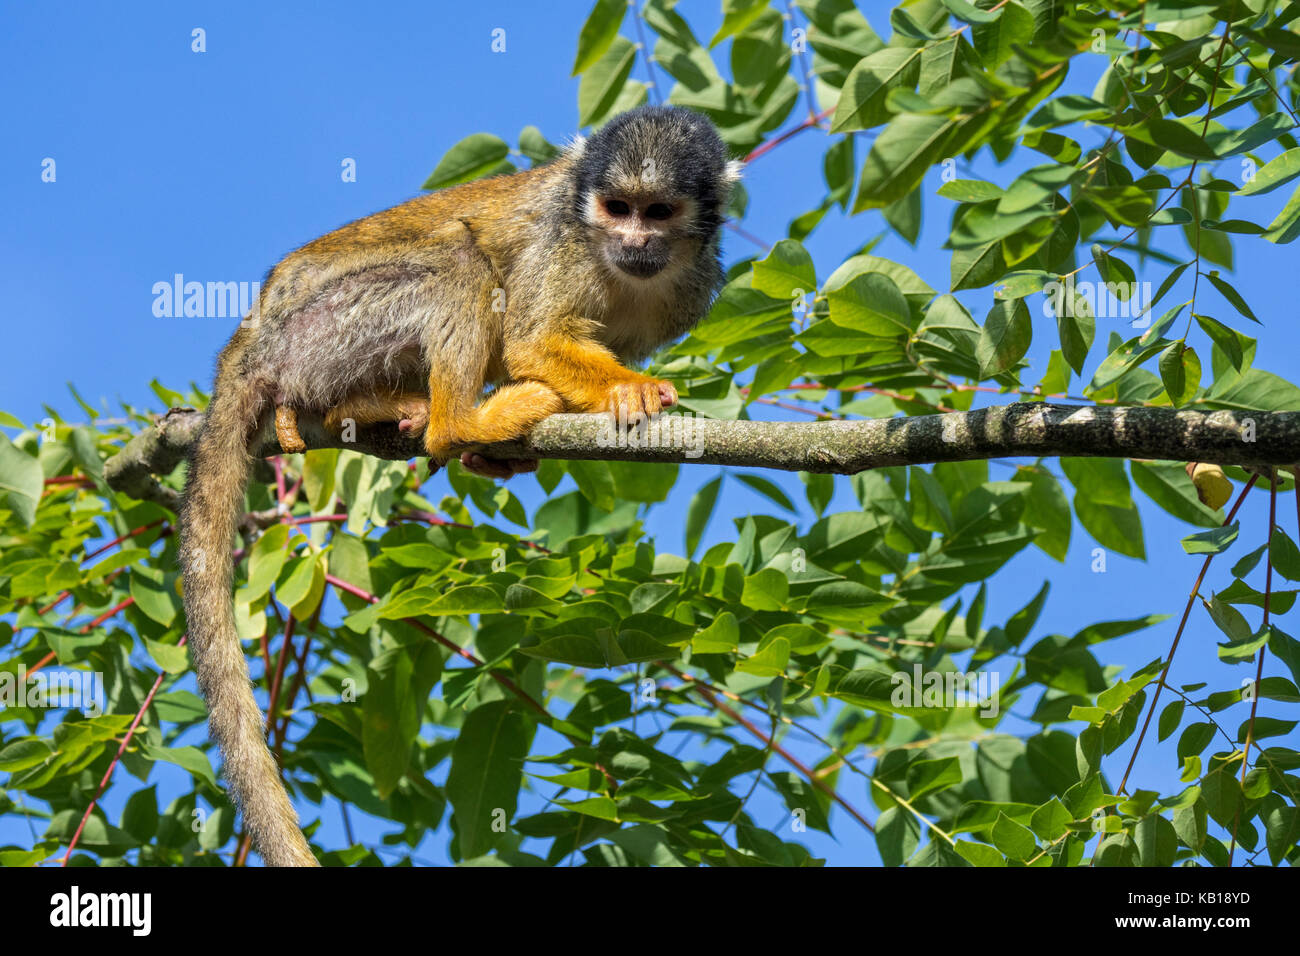 Nero-capped Scimmia di scoiattolo / peruviana di Scimmia di scoiattolo (Saimiri boliviensis peruviensis) nella struttura ad albero, originario del sud america Foto Stock